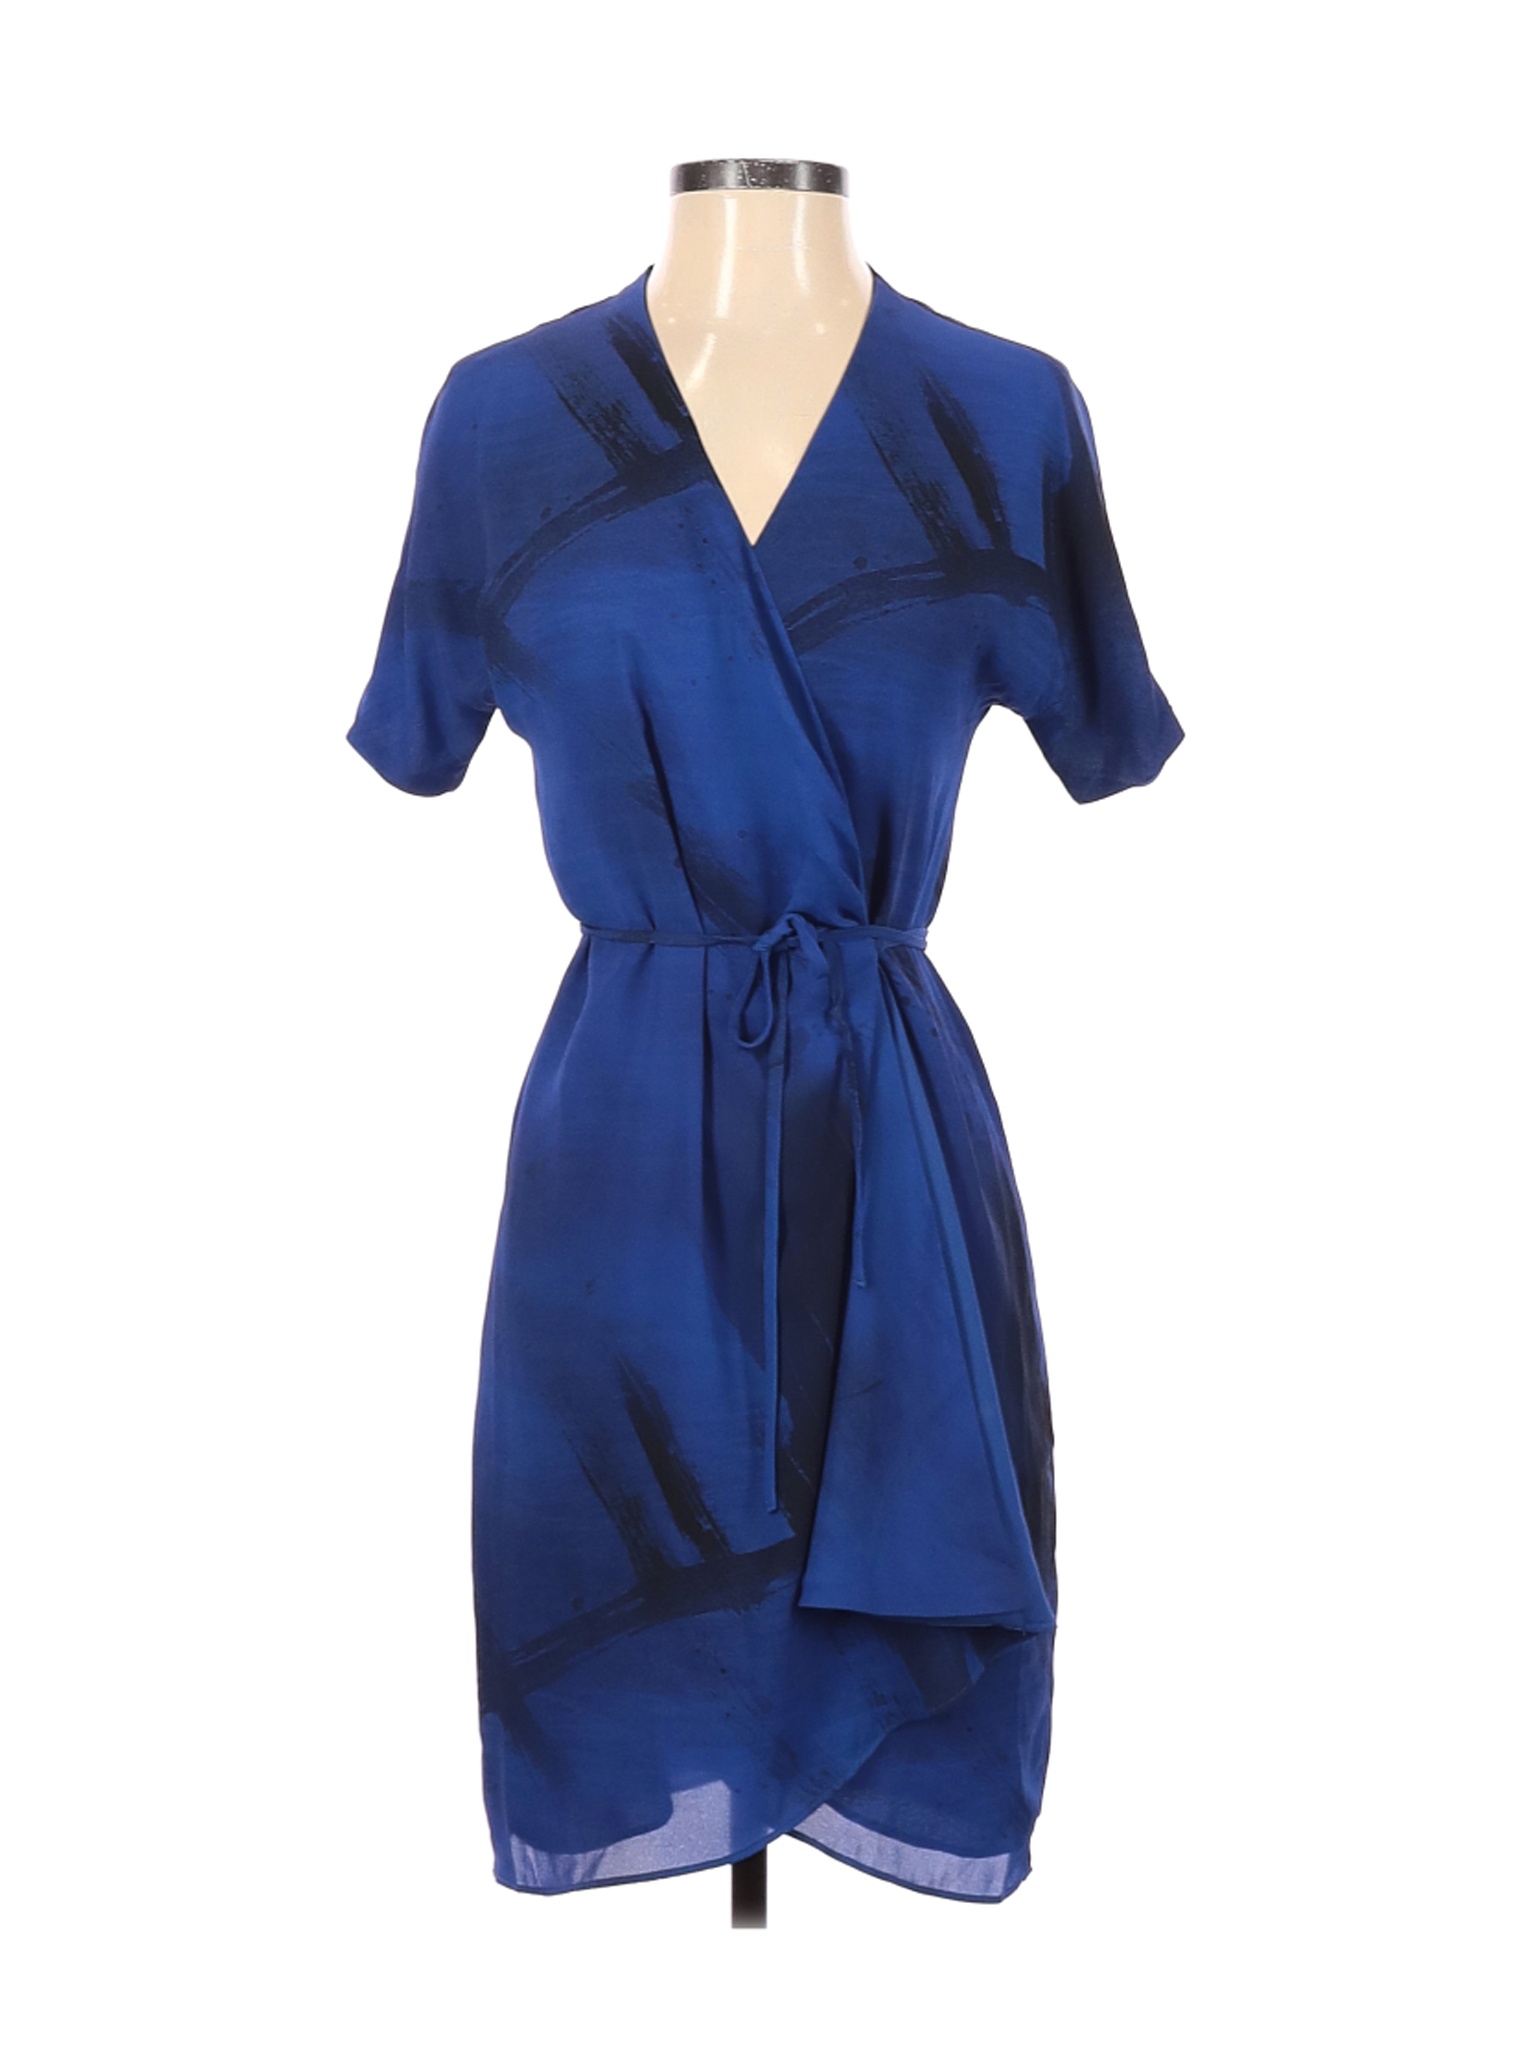 Babaton Women Blue Casual Dress XS | eBay